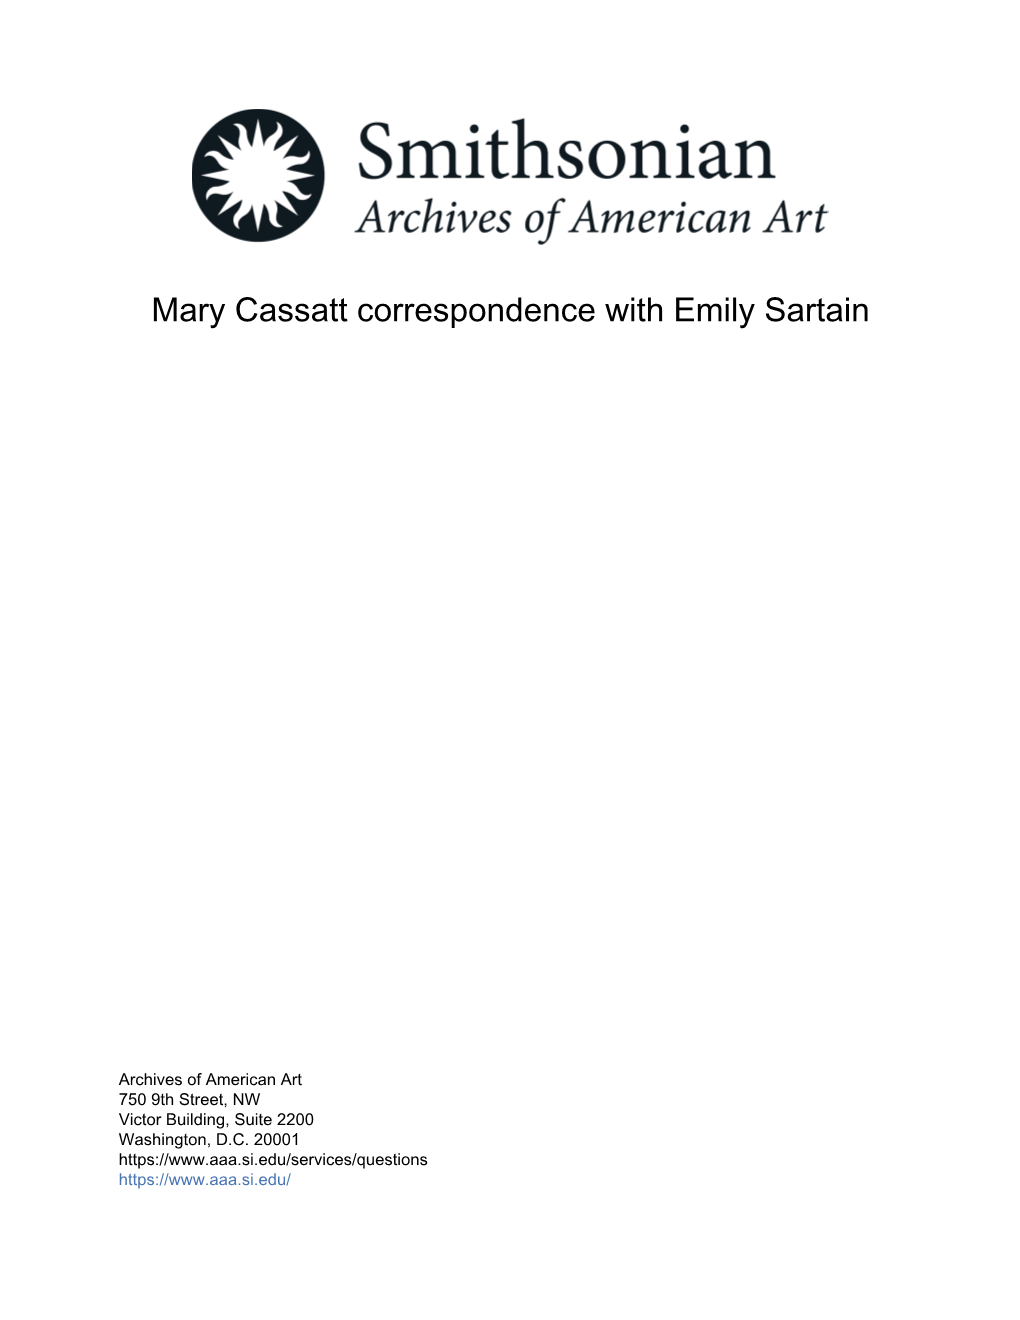 Mary Cassatt Correspondence with Emily Sartain